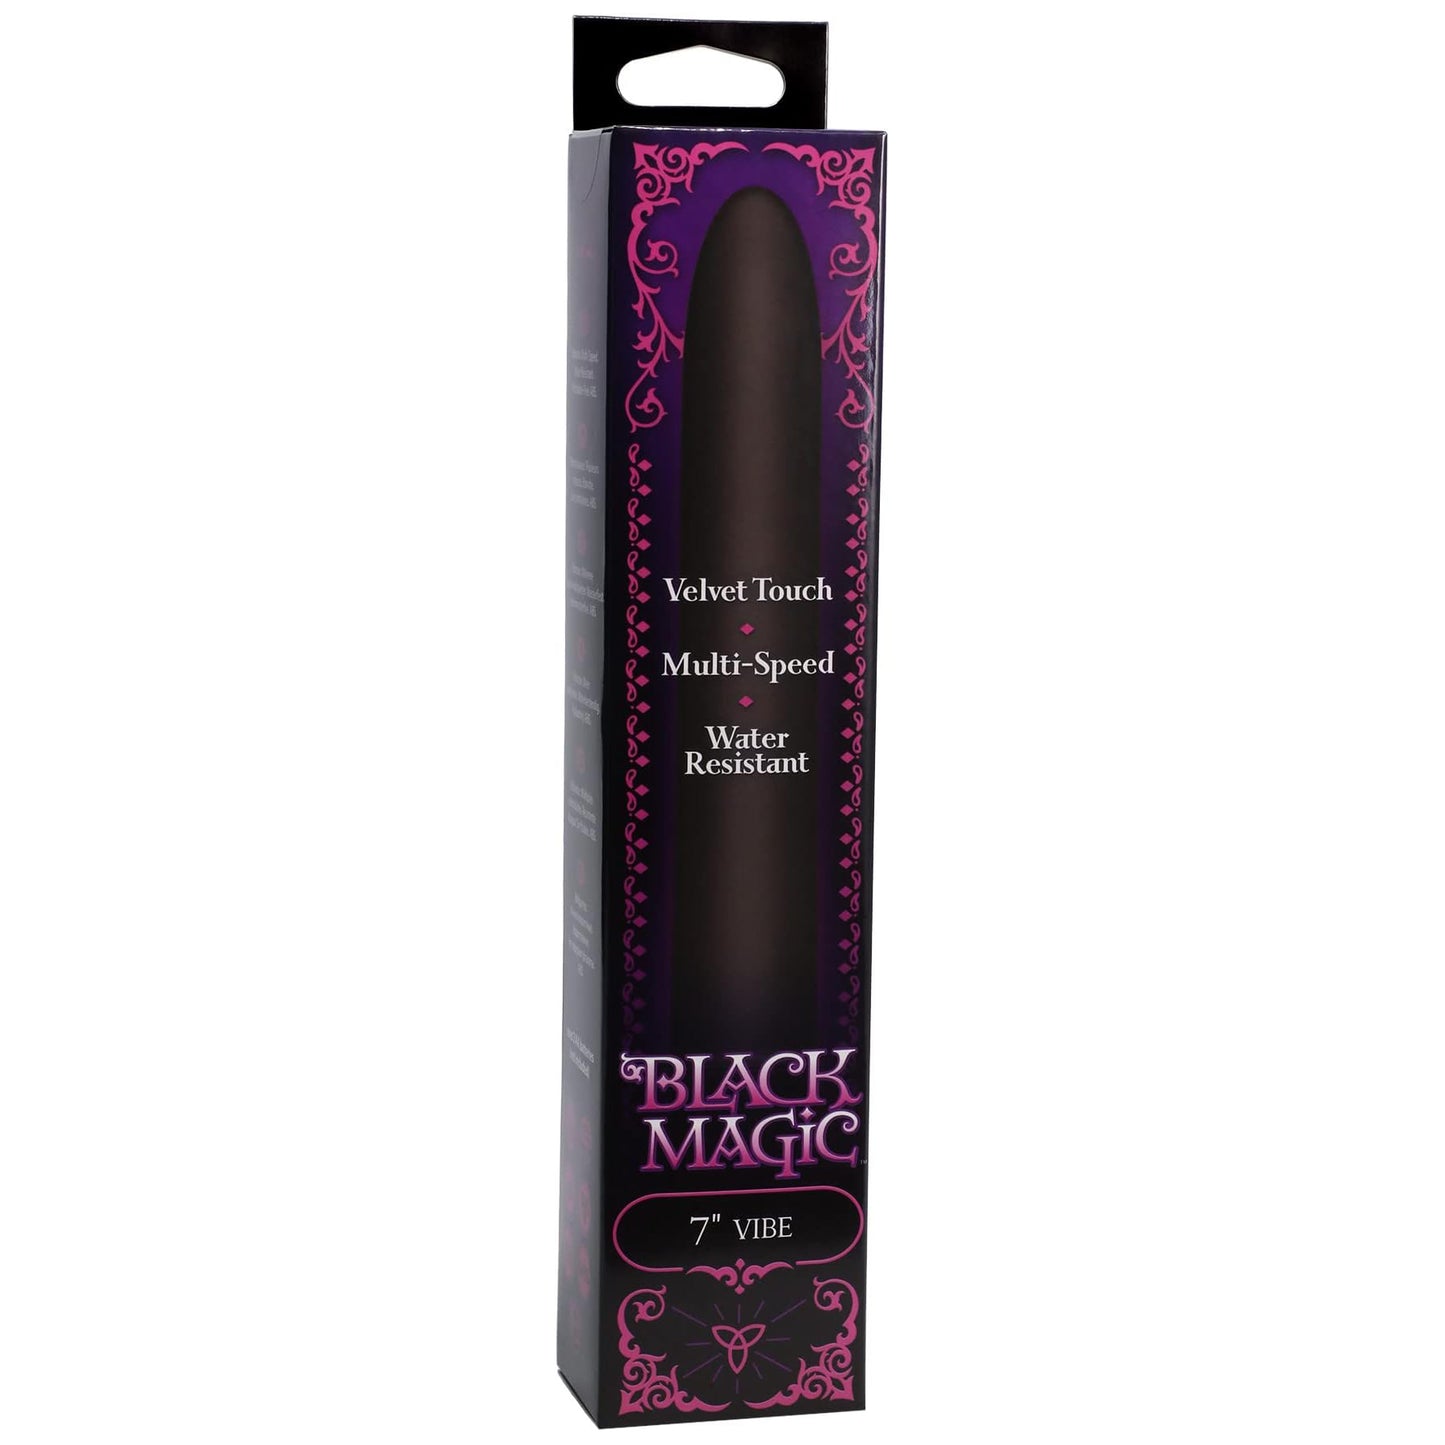 Black Magic Velvet Touch Vibrator